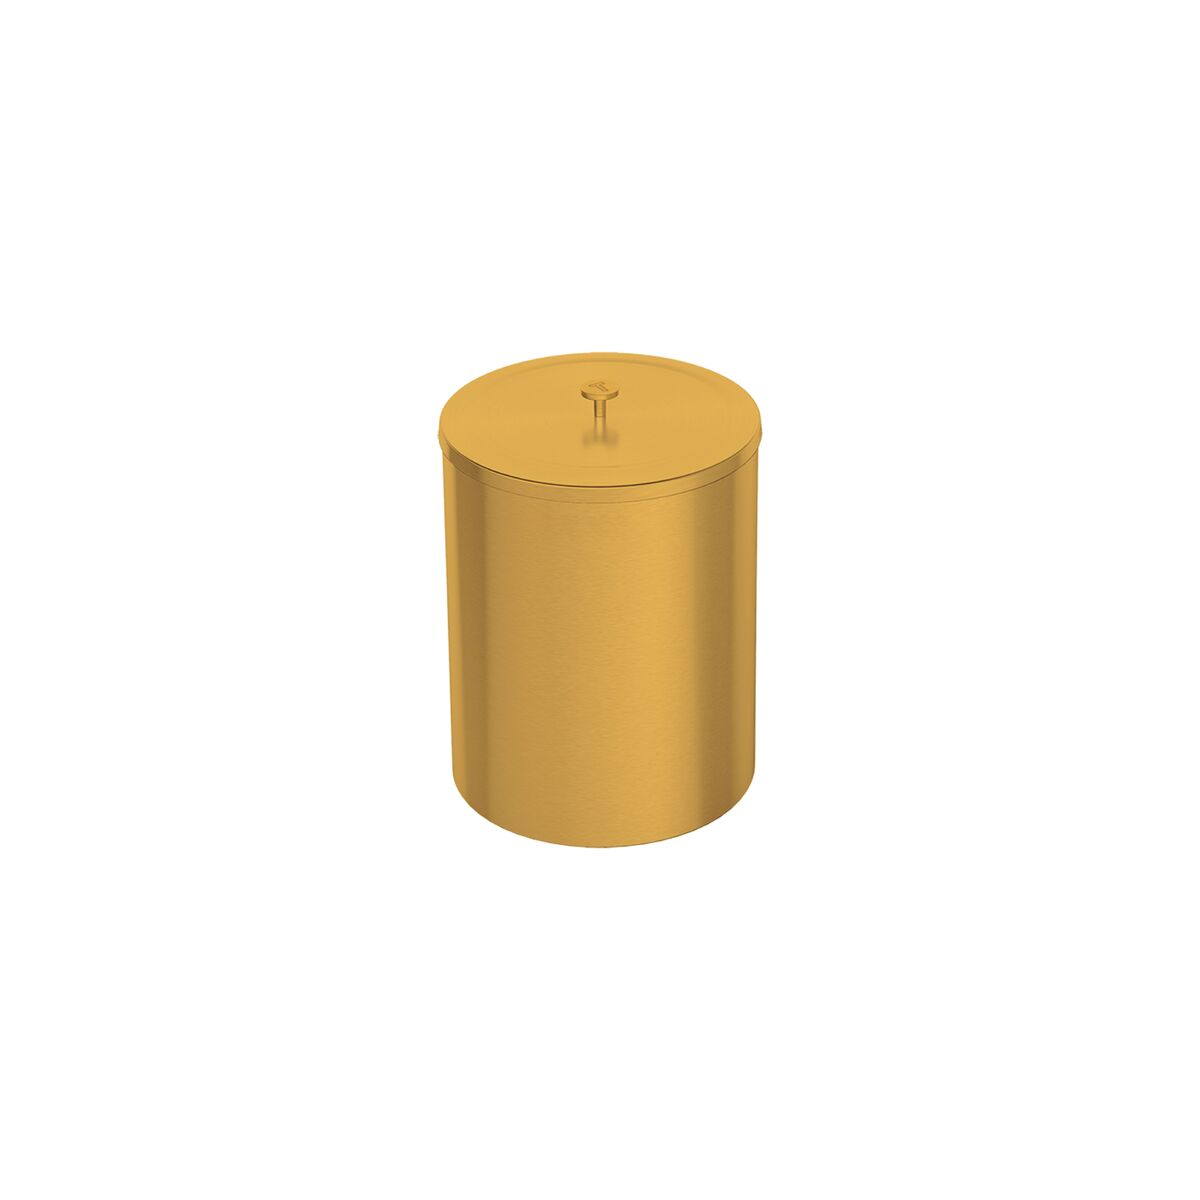 Lixeira Tramontina Útil em Aço Inox Scotch Brite com revestimento especial a base de verniz Gold 5 L
